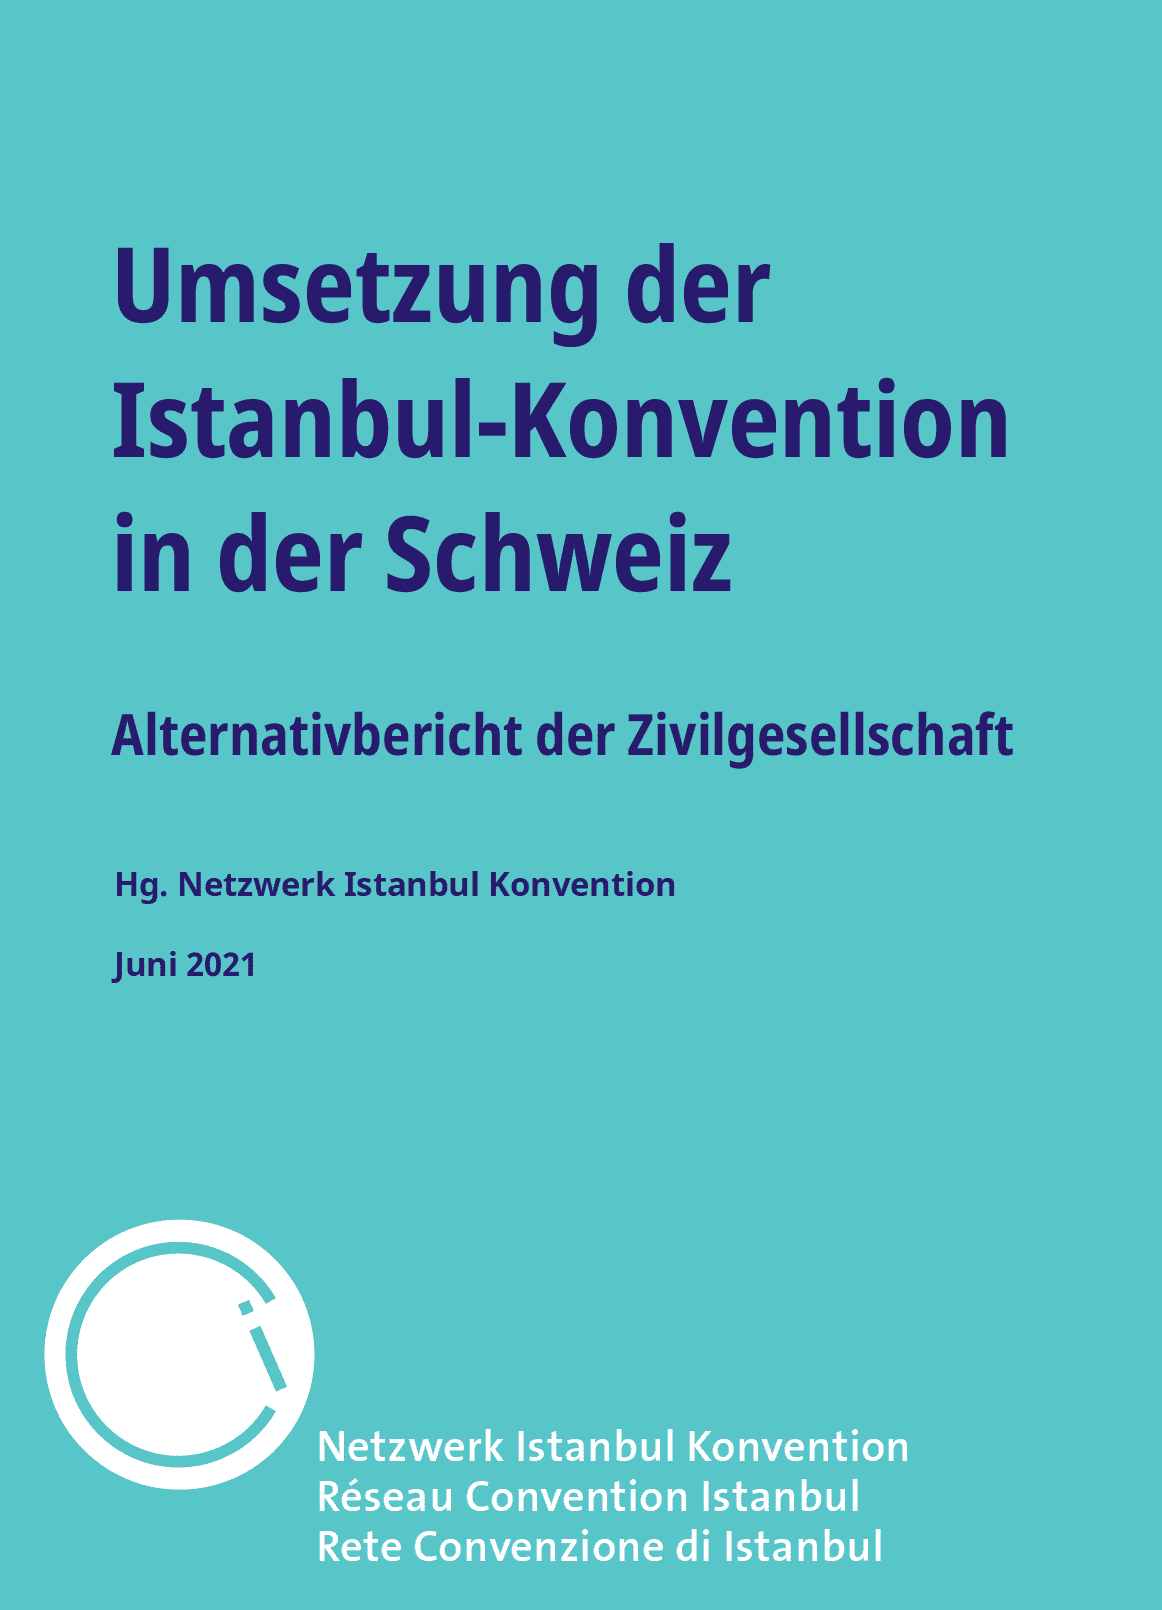 Umsetzung Istanbul-Konvention in der Schweiz